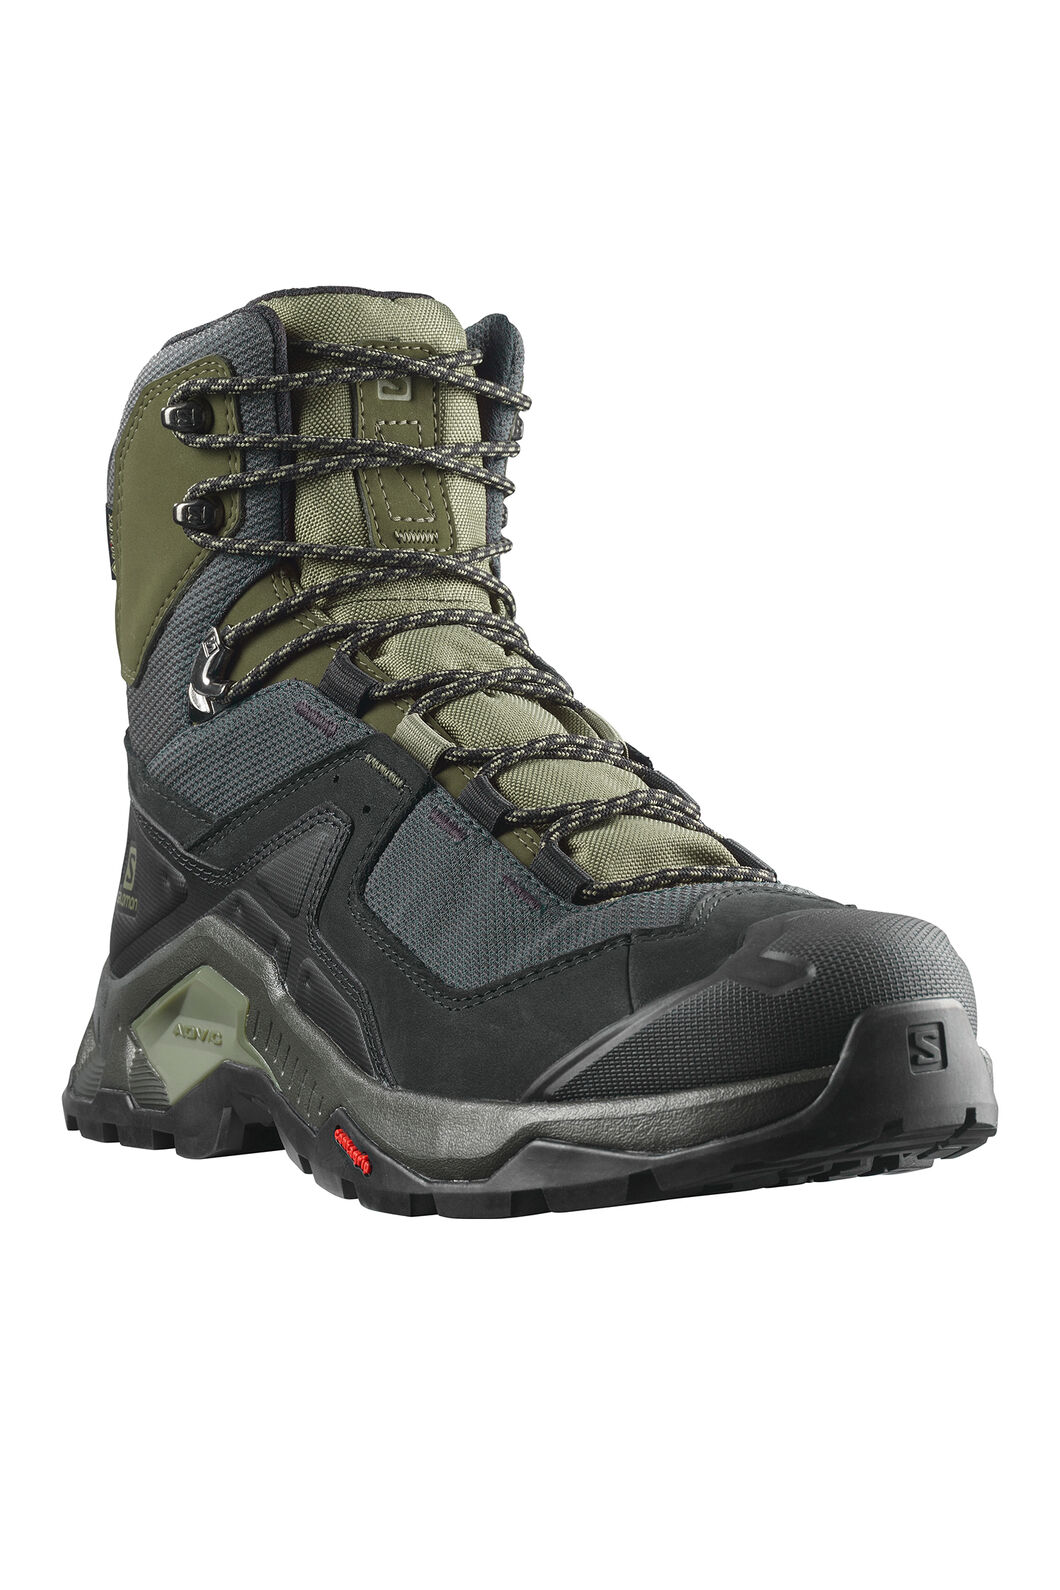 Salomon Men's Quest Element GTX Hiking Boots | Macpac